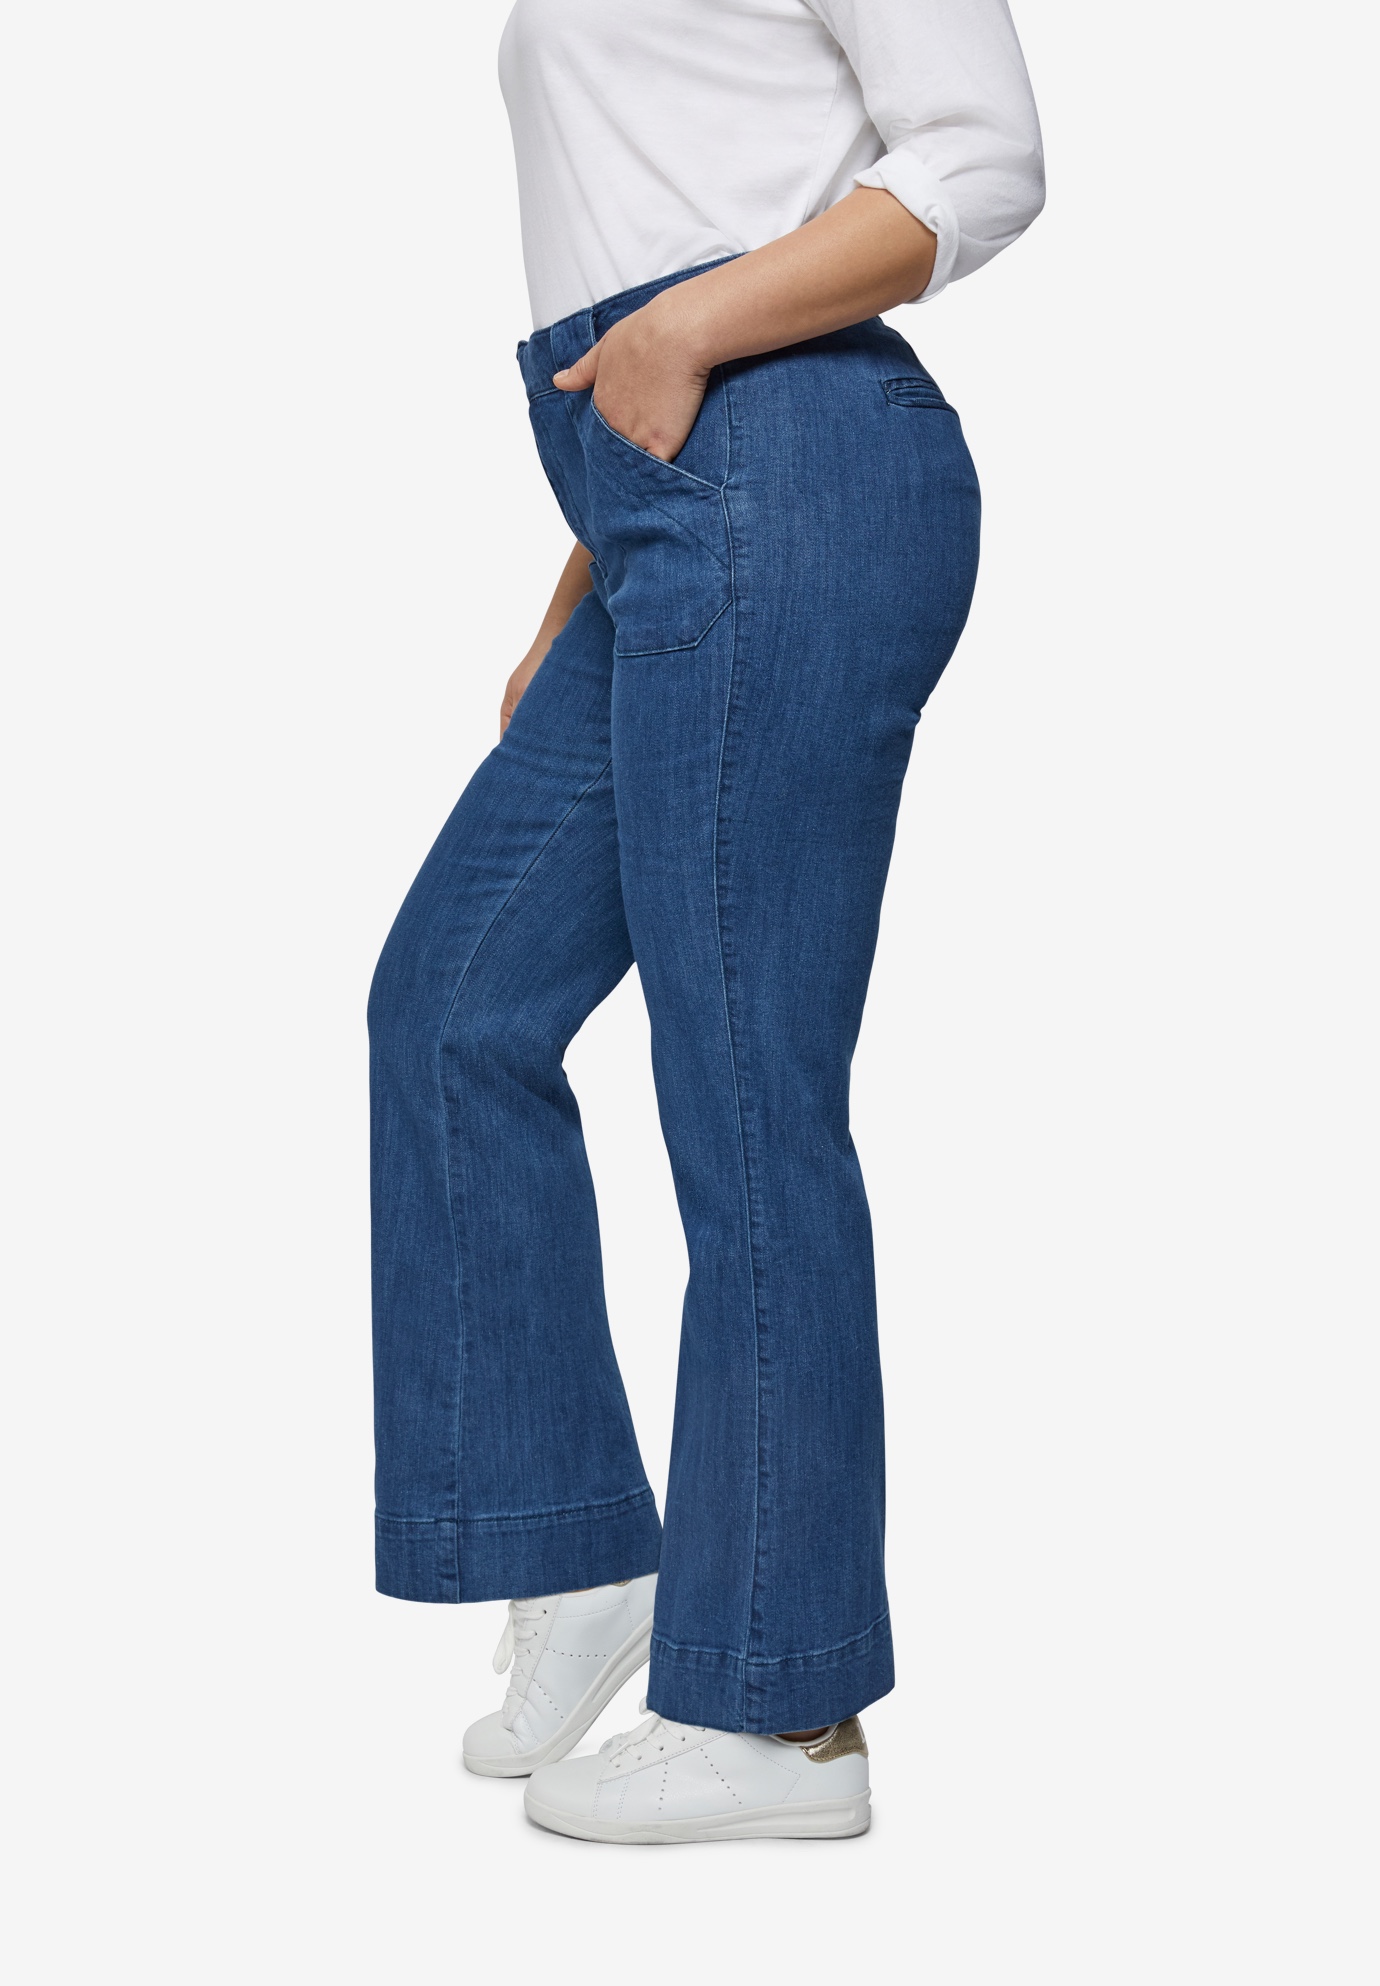 jeans high waist wide leg